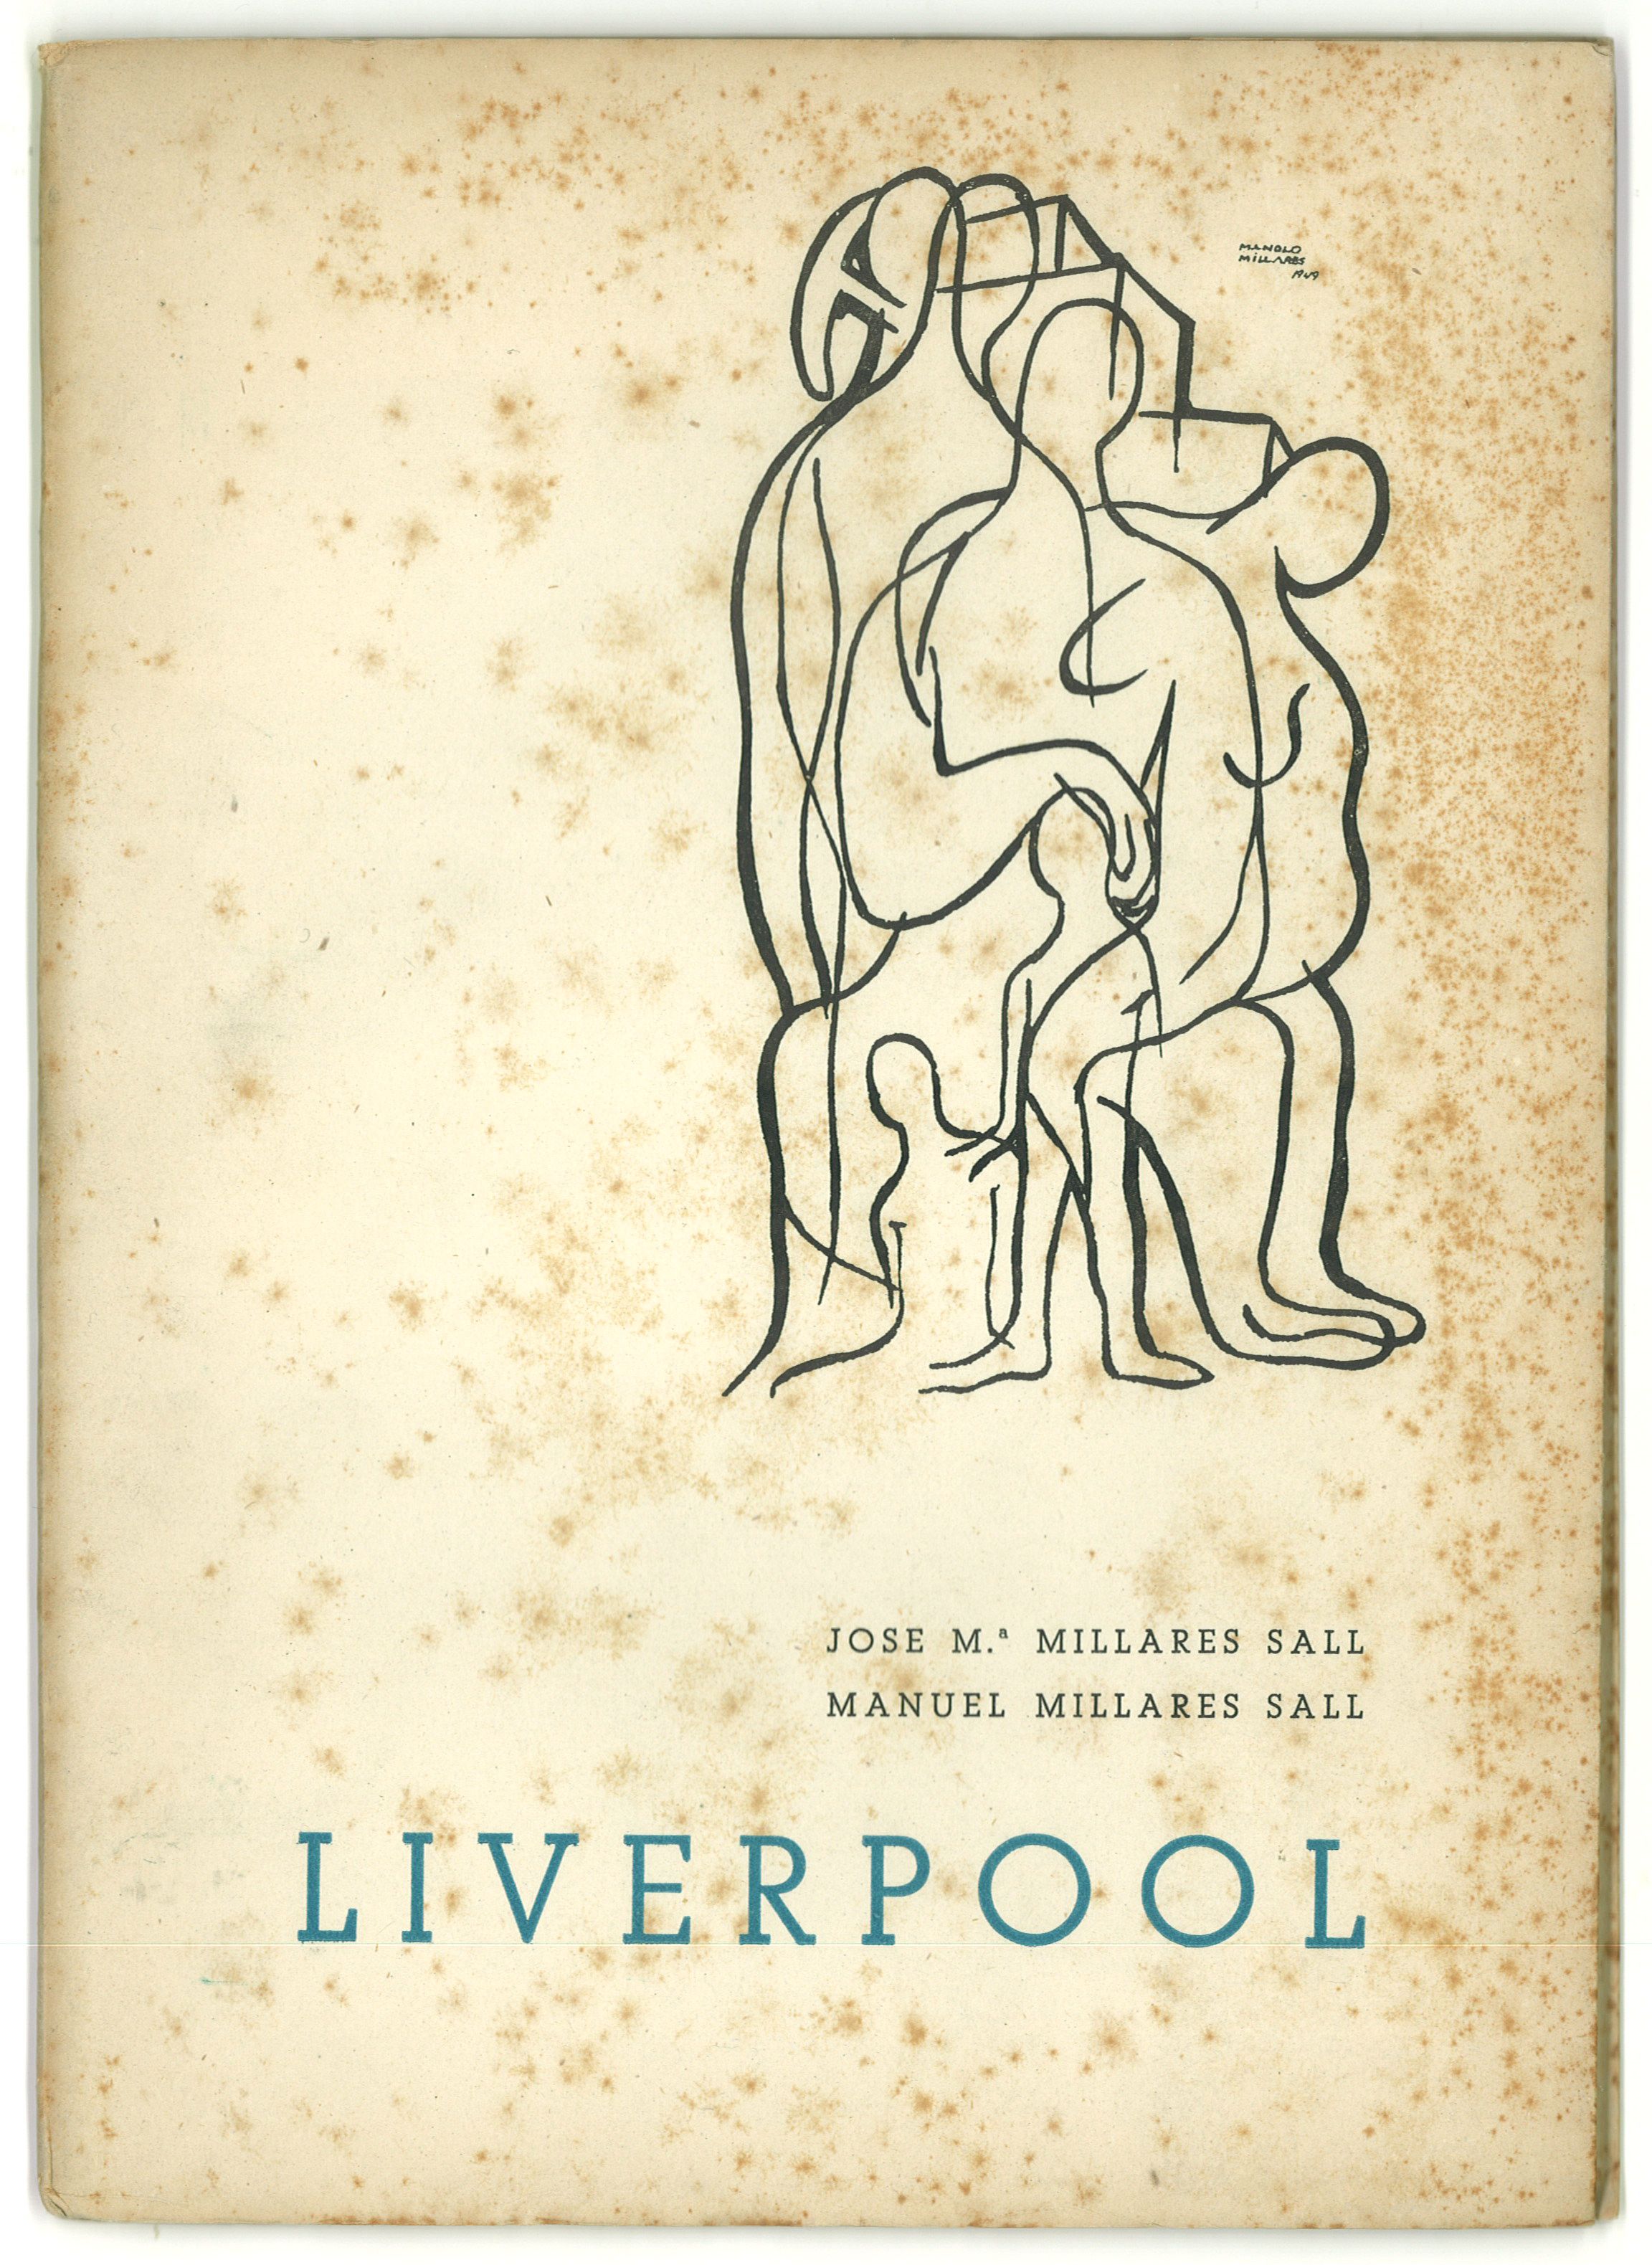 Primera edición de Liverpool que se muestra